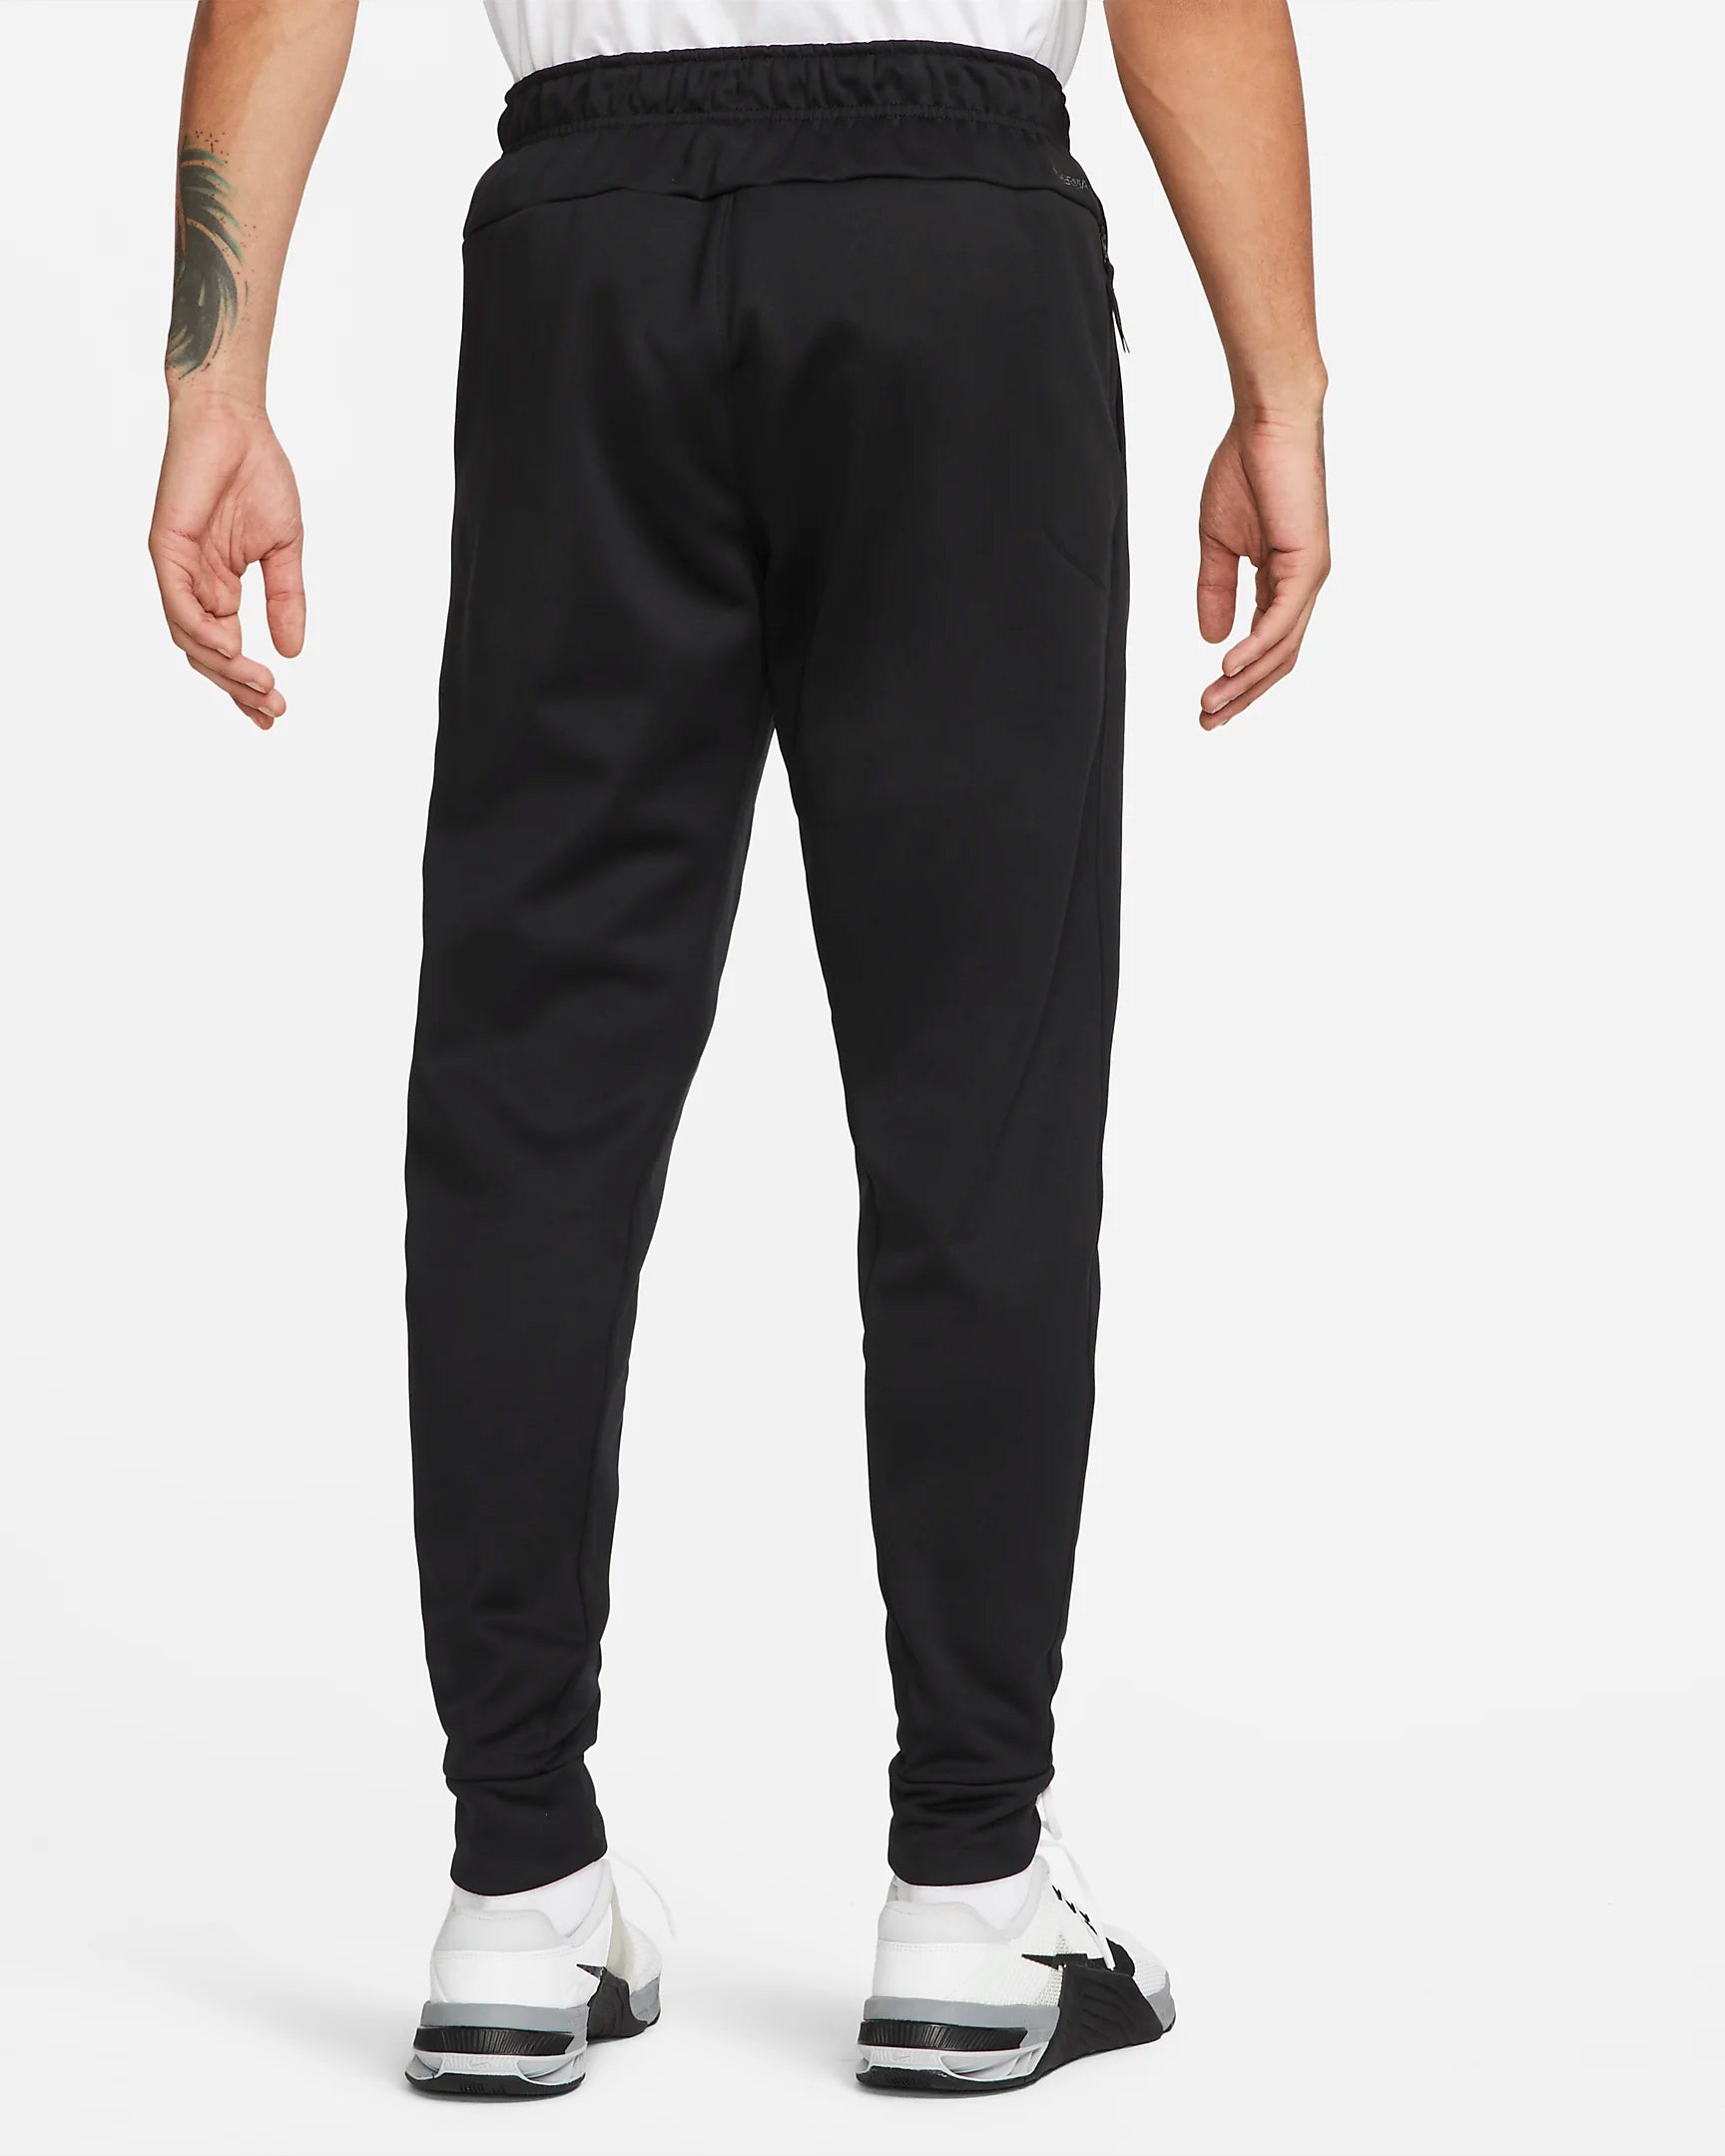 Pantalon Nike Therma - Noir